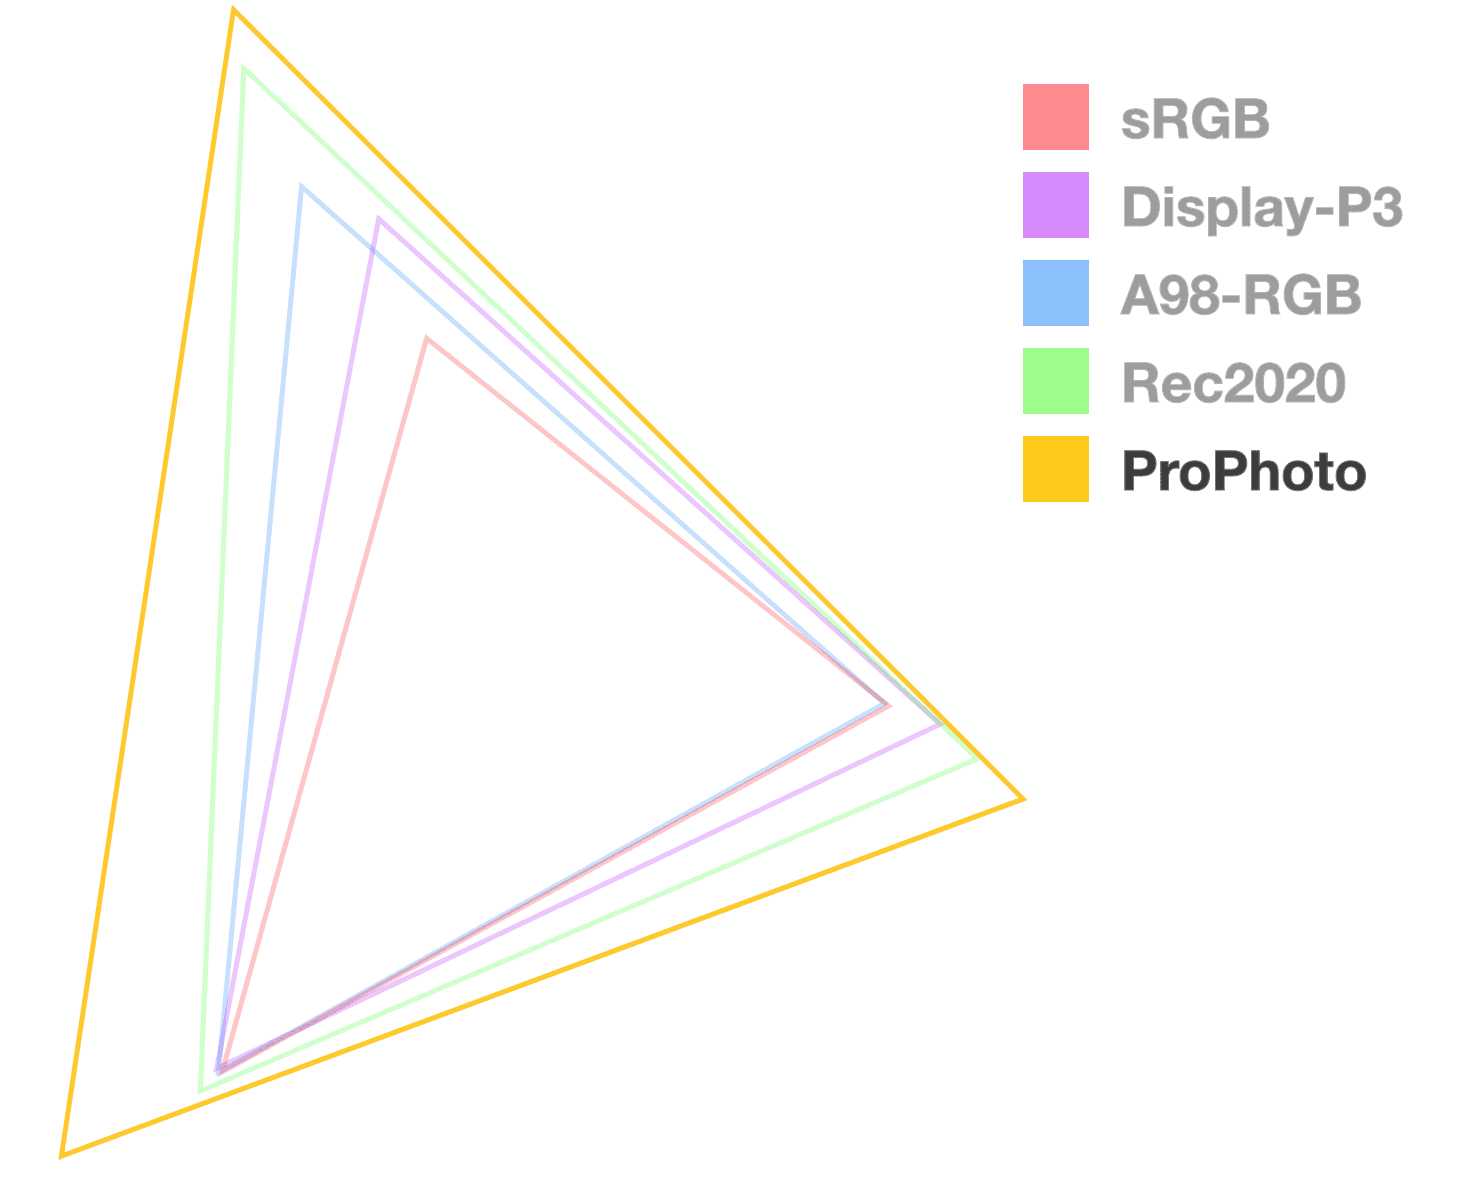 Trójkąt ProPhoto jest jedyną funkcją w pełni nieprzezroczystą, która ułatwia wizualizację rozmiaru gamy. Wygląda na największą.